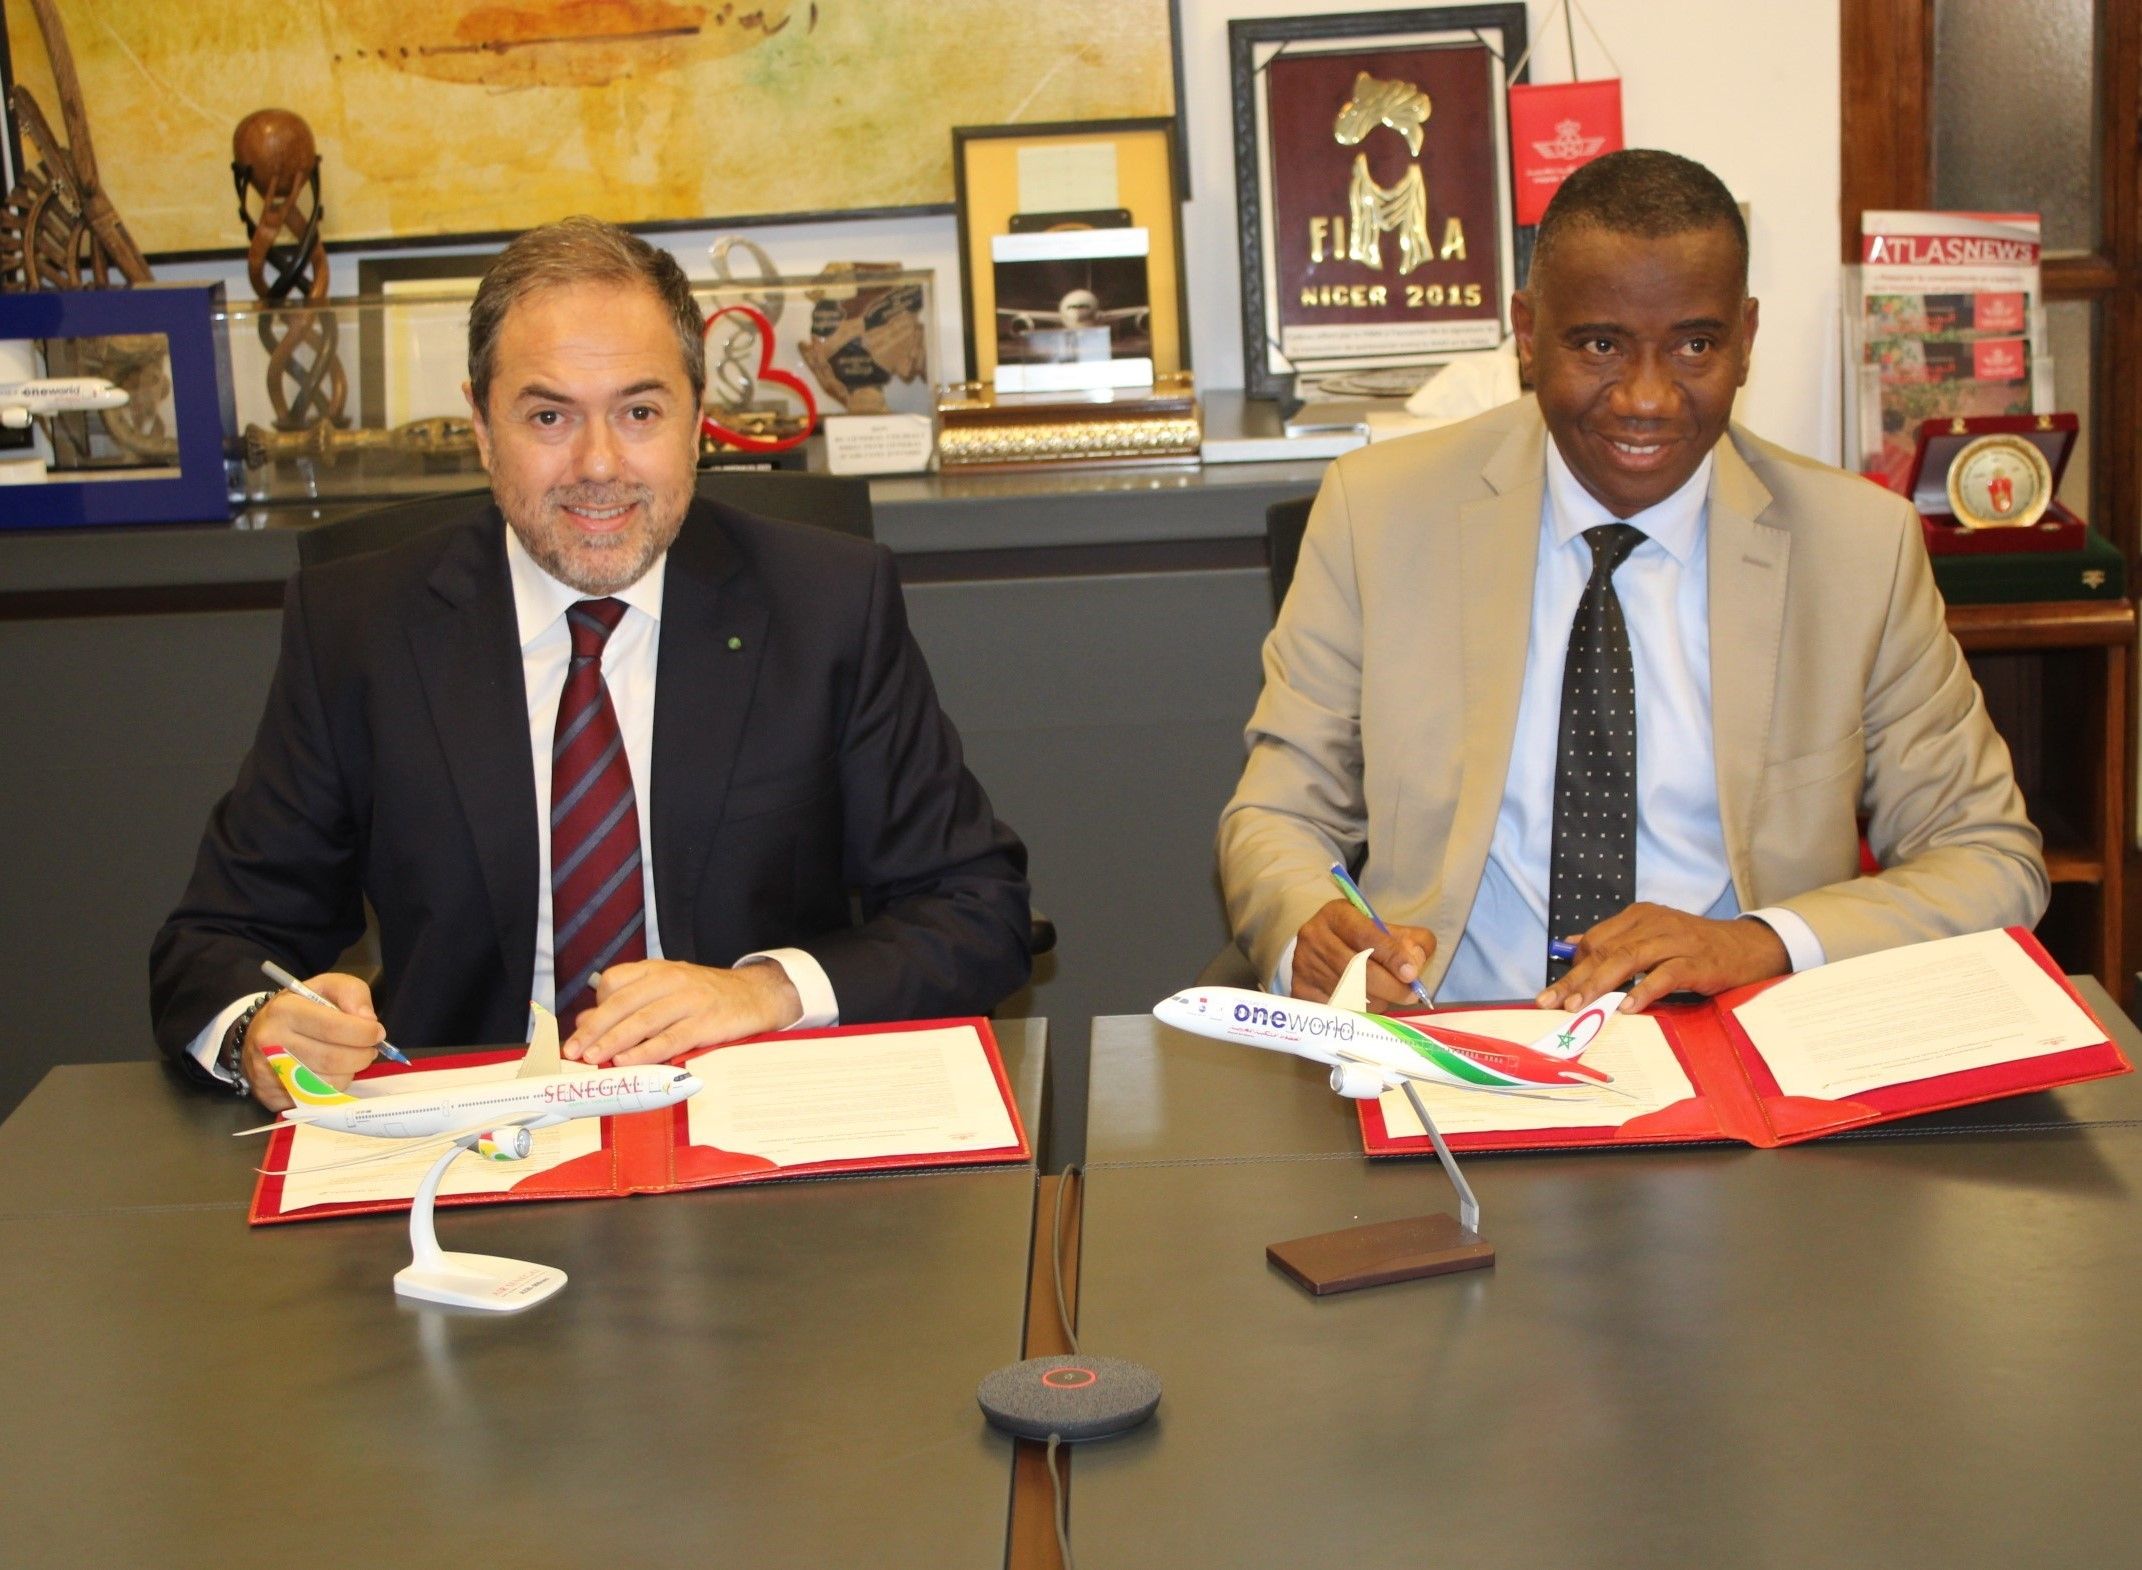 Royal Air Maroc et Air Sénégal concluent un partenariat stratégique